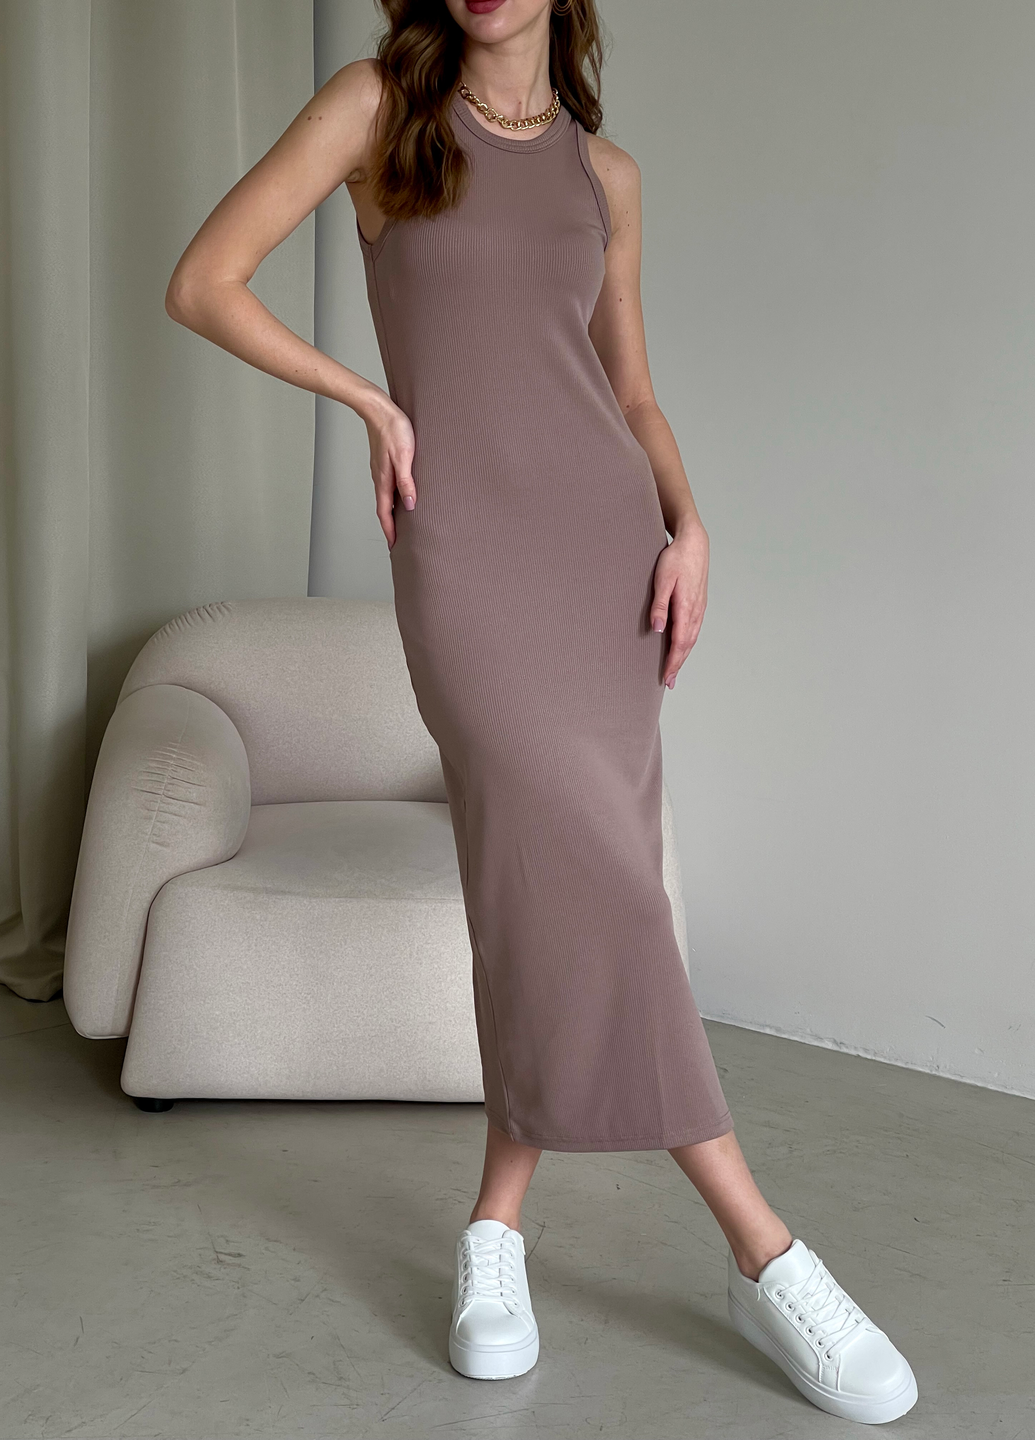 Купить Длинное платье-майка в рубчик цвета мокко Merlini Лонга 700000104 размер 42-44 (S-M) в интернет-магазине